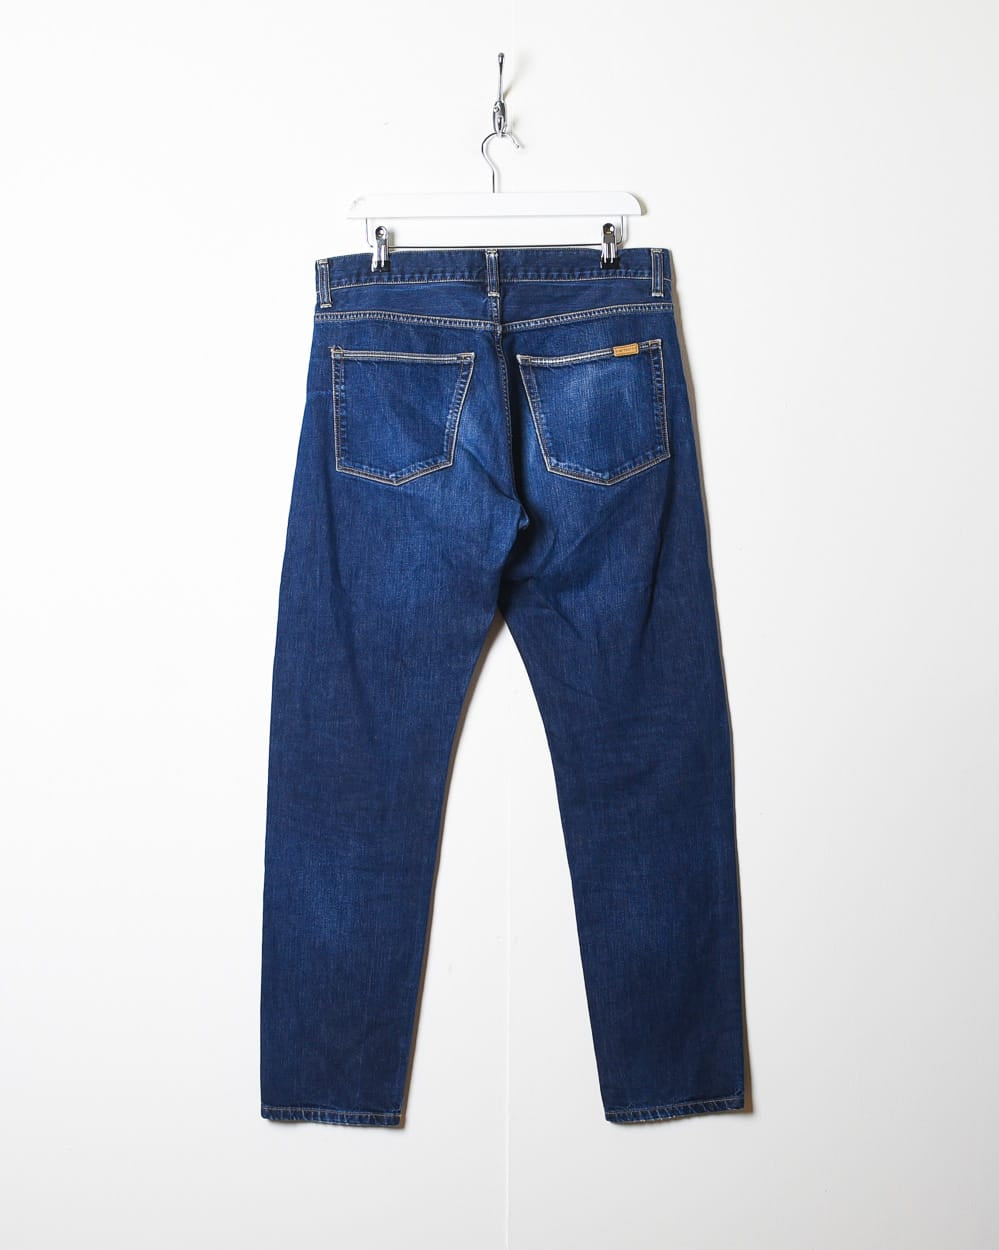 Navy Carhartt Jeans - W34 L31